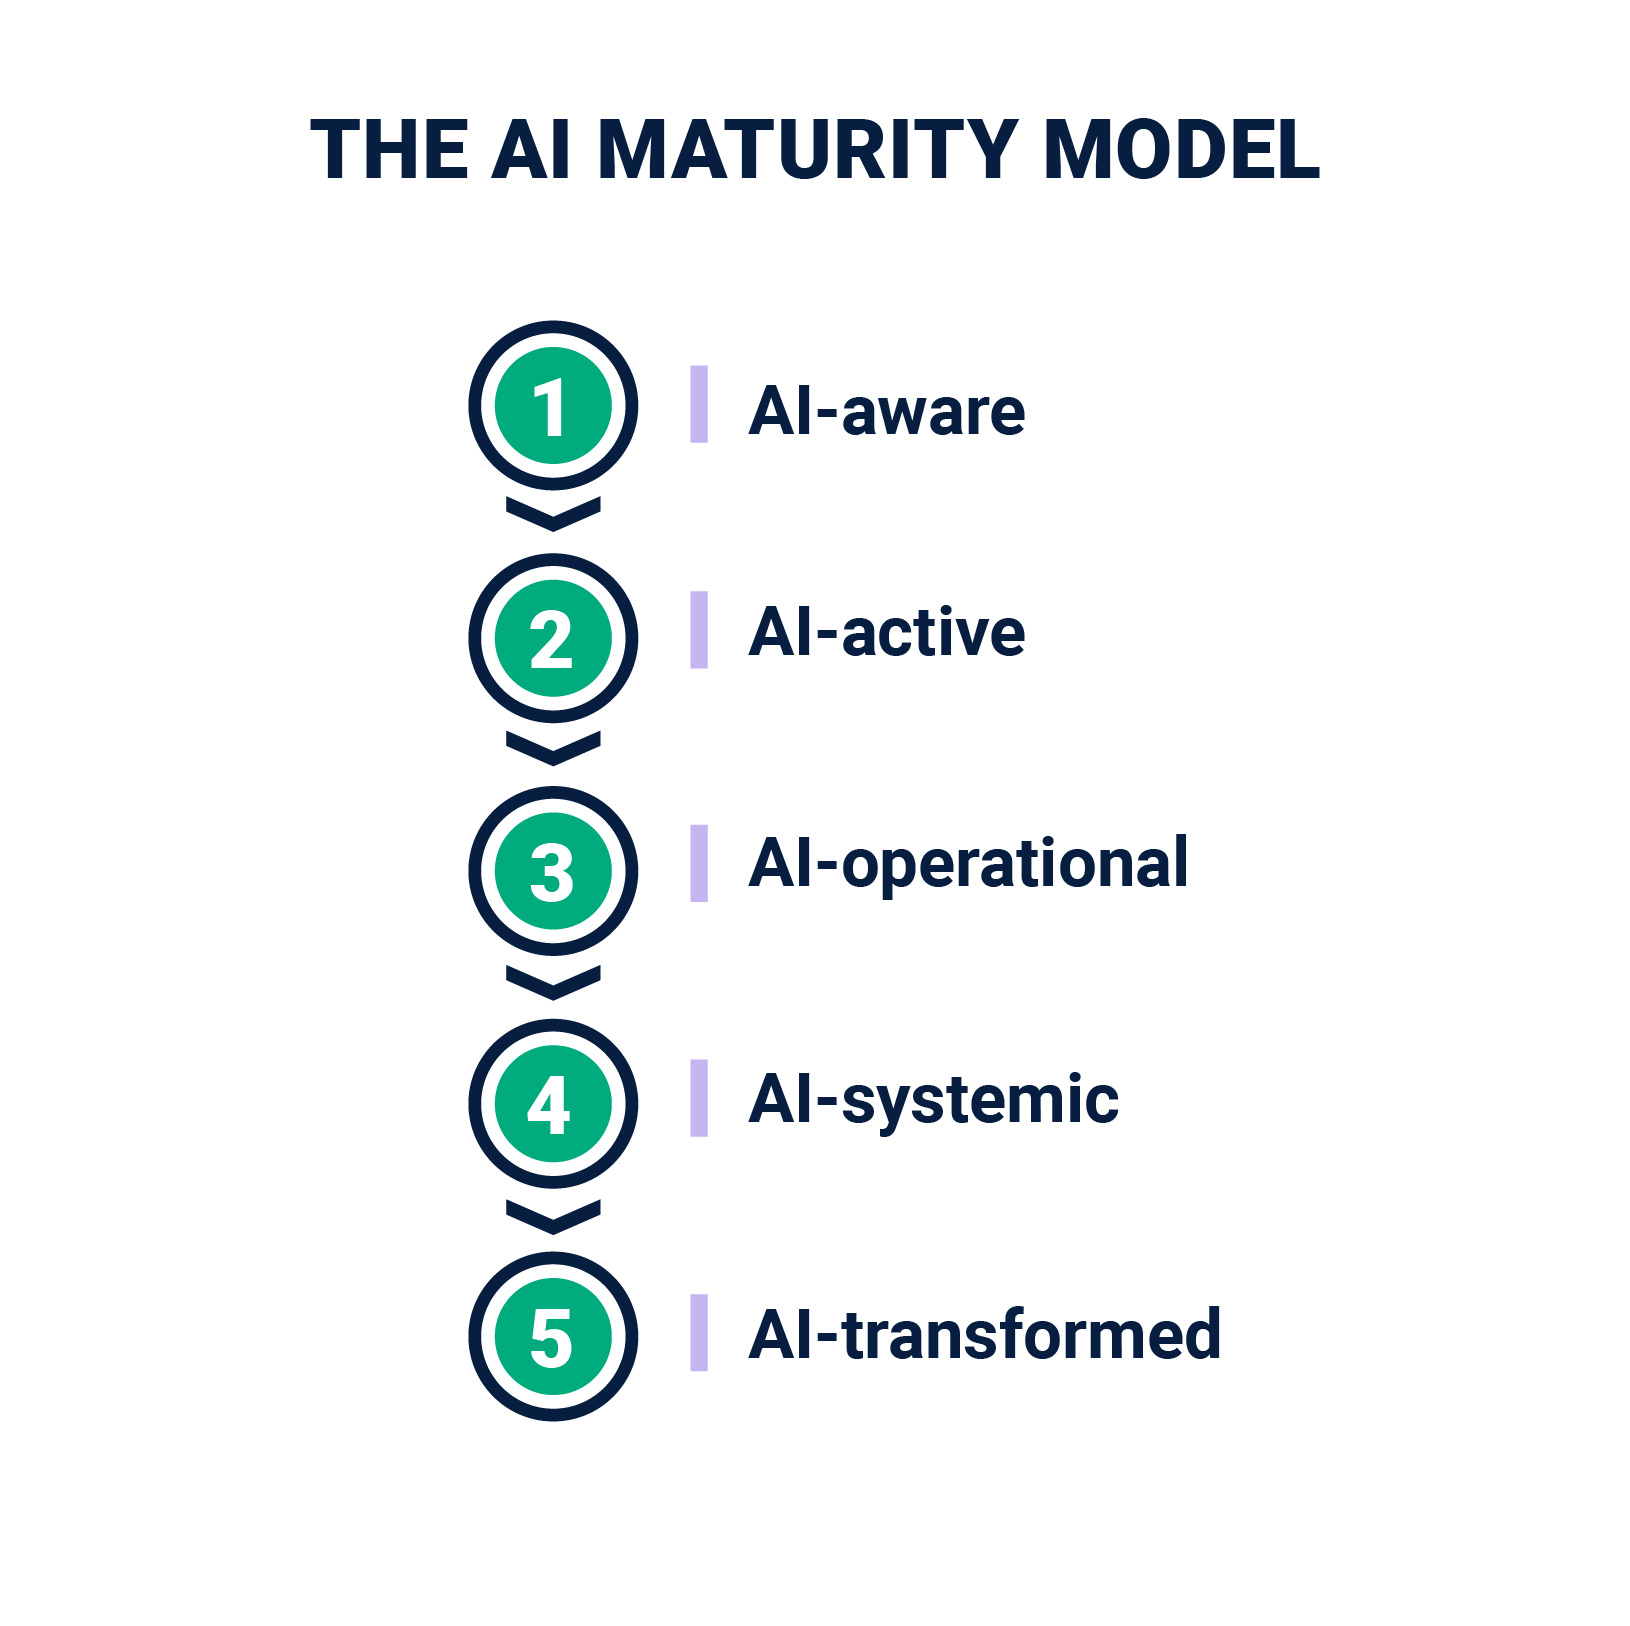 The AI Maturity Model. 1-AI-aware, 2-AI-active, 3-AI-operational, 4-AI-systemic, 5-AI-transformed